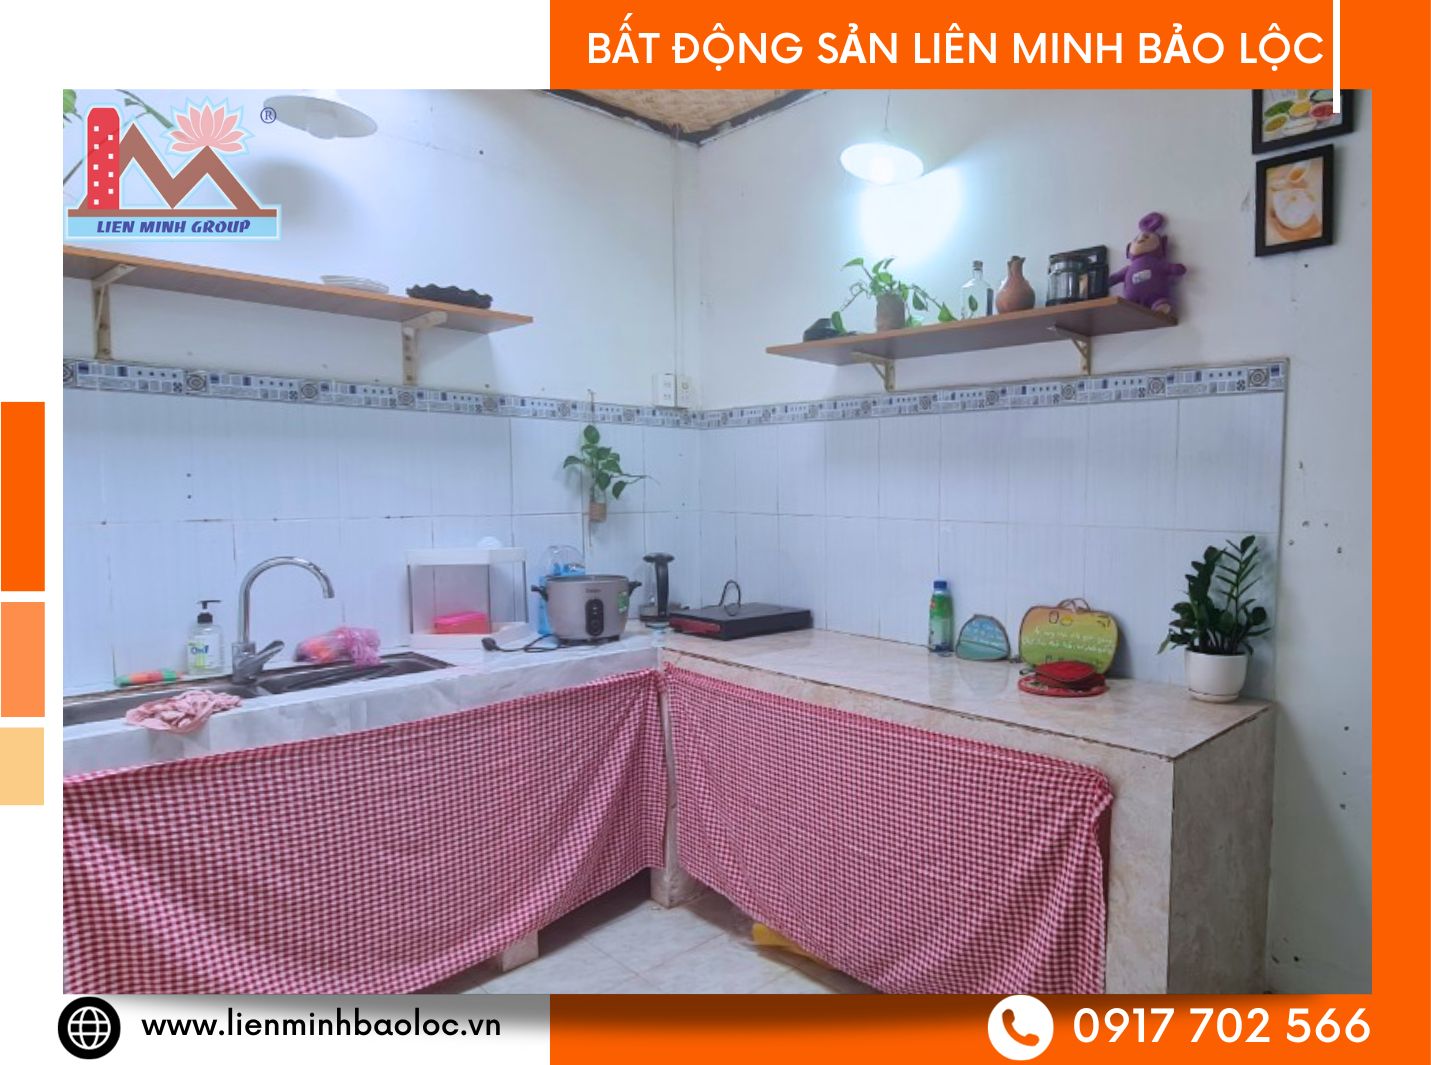 Cho thuê nhà mới sạch sẽ tại Bảo Lộc